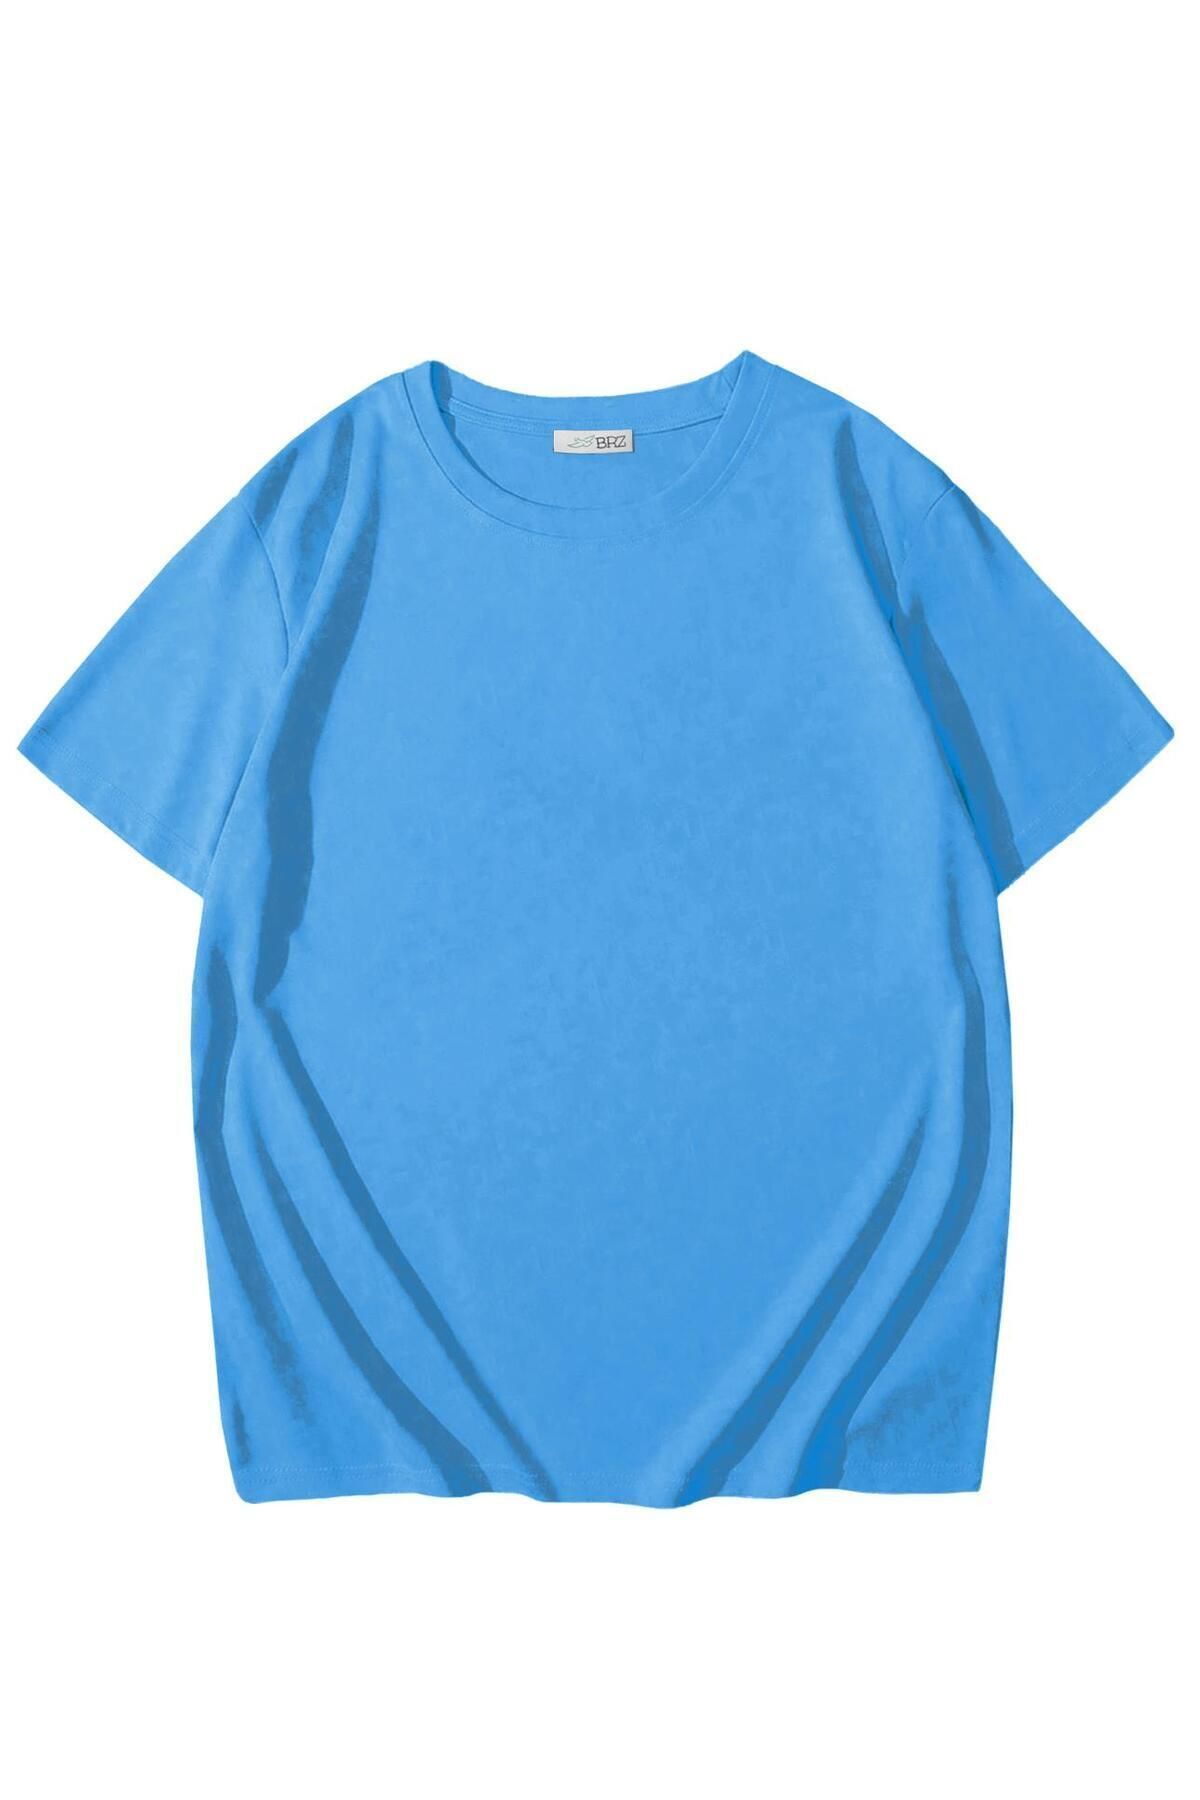 BRZ KIDS Kids Unisex Çocuk Basic T-shirt Açık Mavi